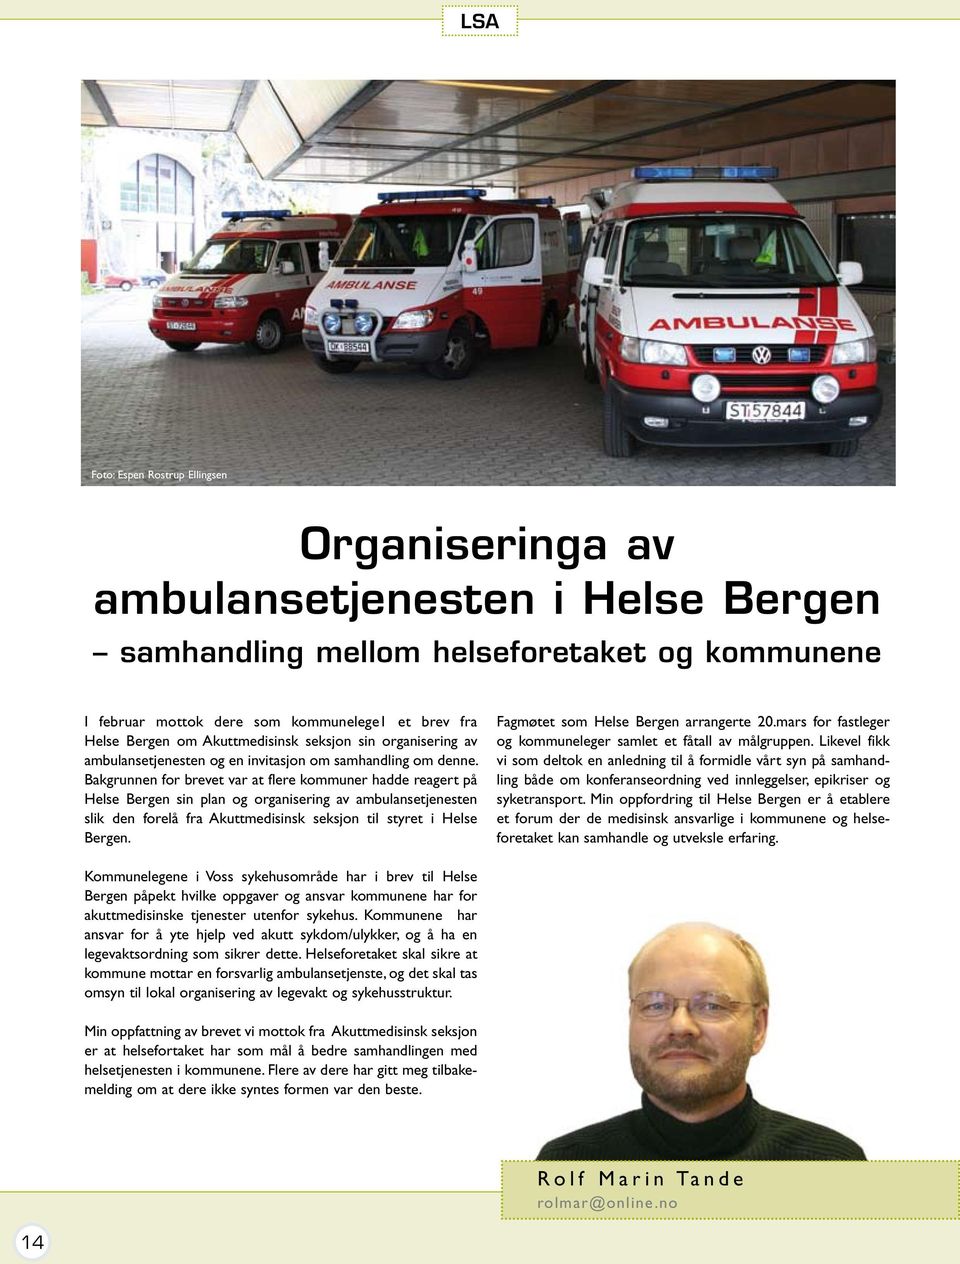 Bakgrunnen for brevet var at flere kommuner hadde reagert på Helse Bergen sin plan og organisering av ambulansetjenesten slik den forelå fra Akuttmedisinsk seksjon til styret i Helse Bergen.